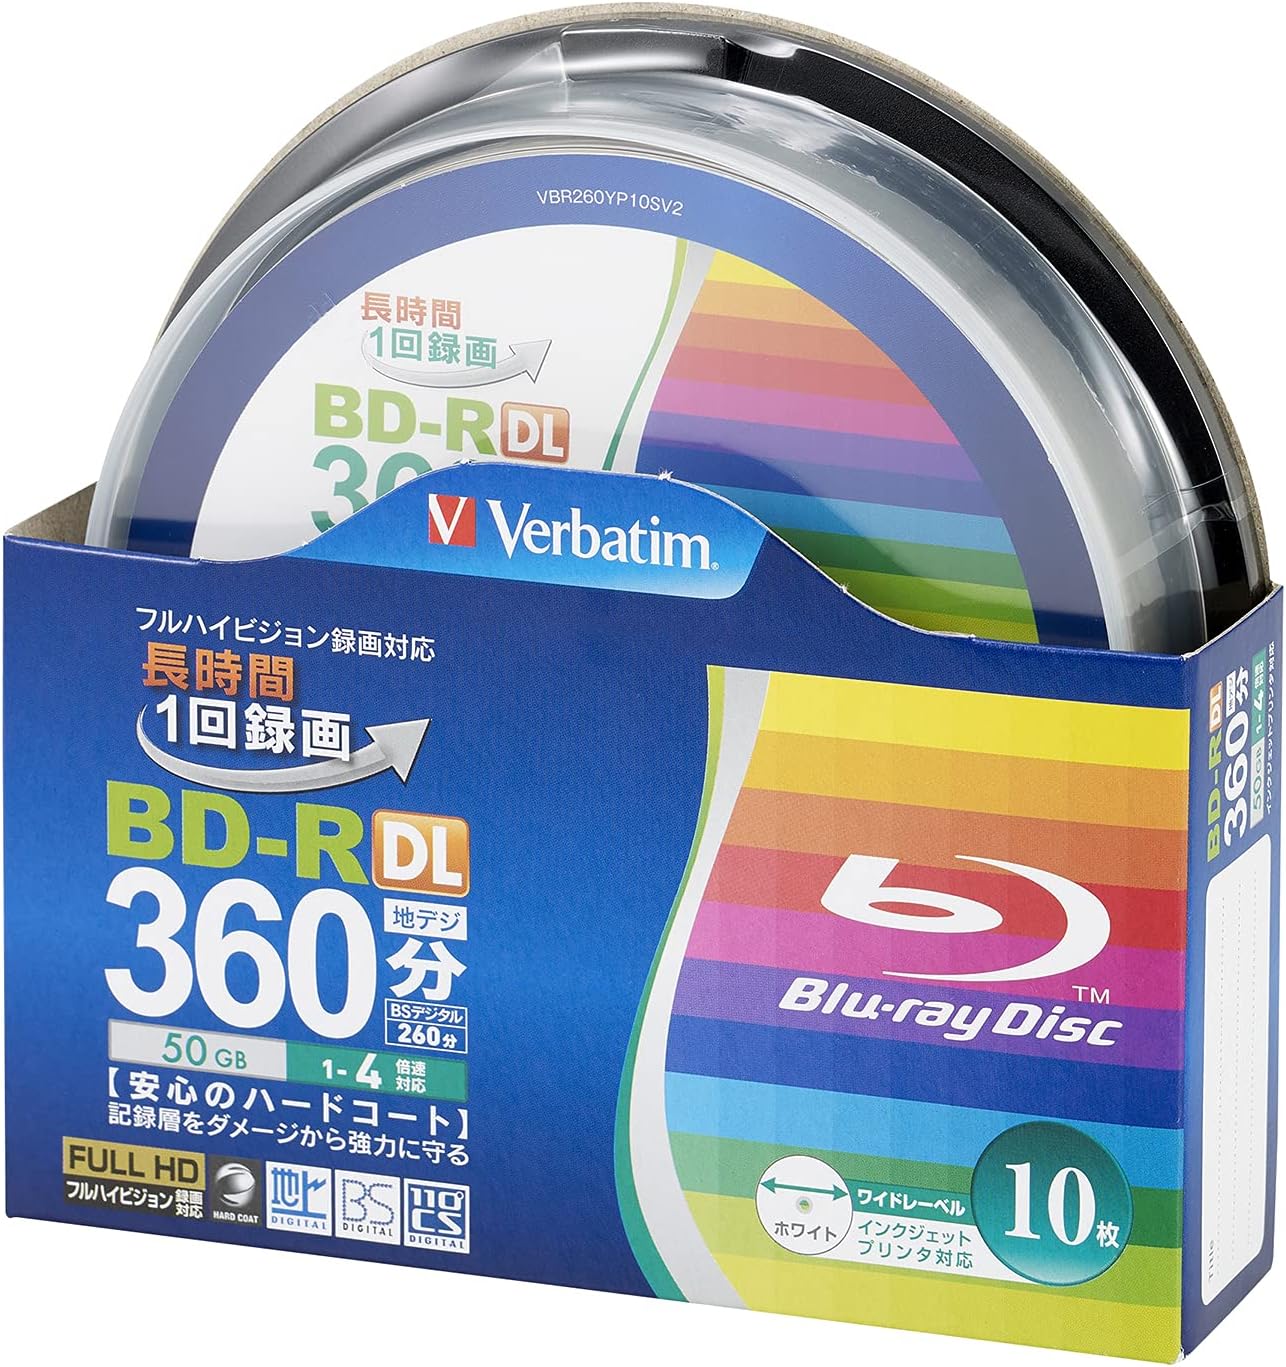 Verbatim バーベイタム 1回録画用 ブルーレイディスク BD-R DL 50GB 10枚 ホワイトプリンタブル 片面2層 1-4倍速 VBR260YP10SV2